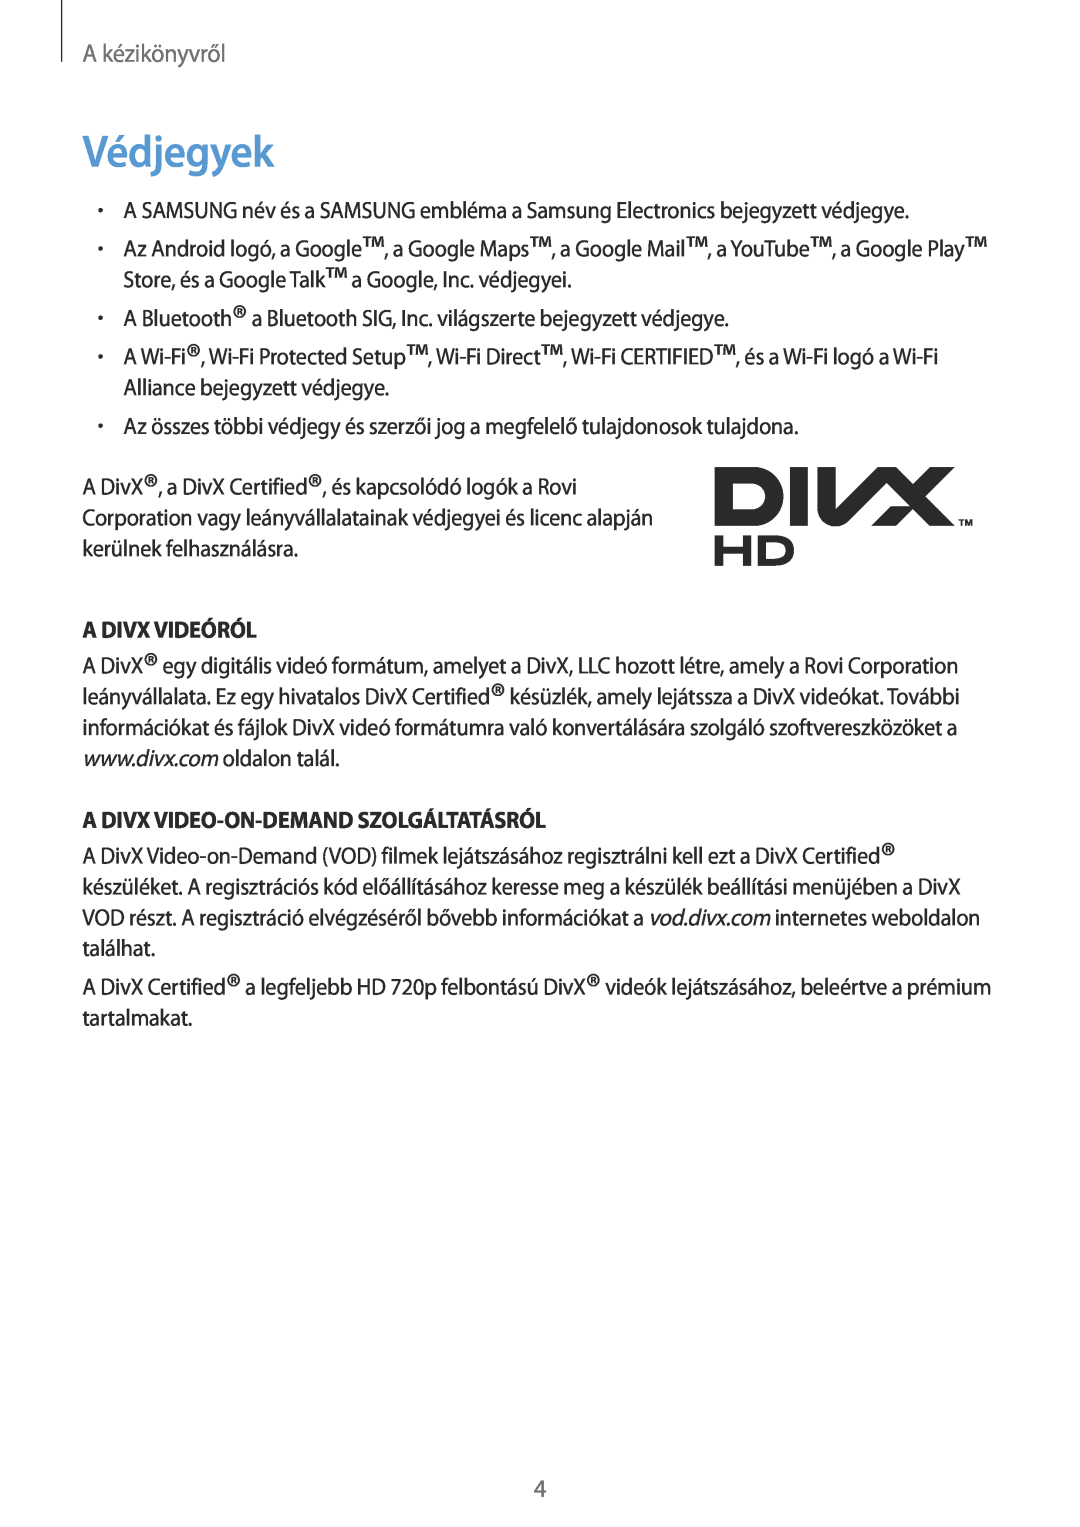 Samsung GT-N7100RWDATO, GT-N7100RWDXEO Védjegyek, A Divx Videóról, A Divx Video-On-Demand Szolgáltatásról, A kézikönyvről 